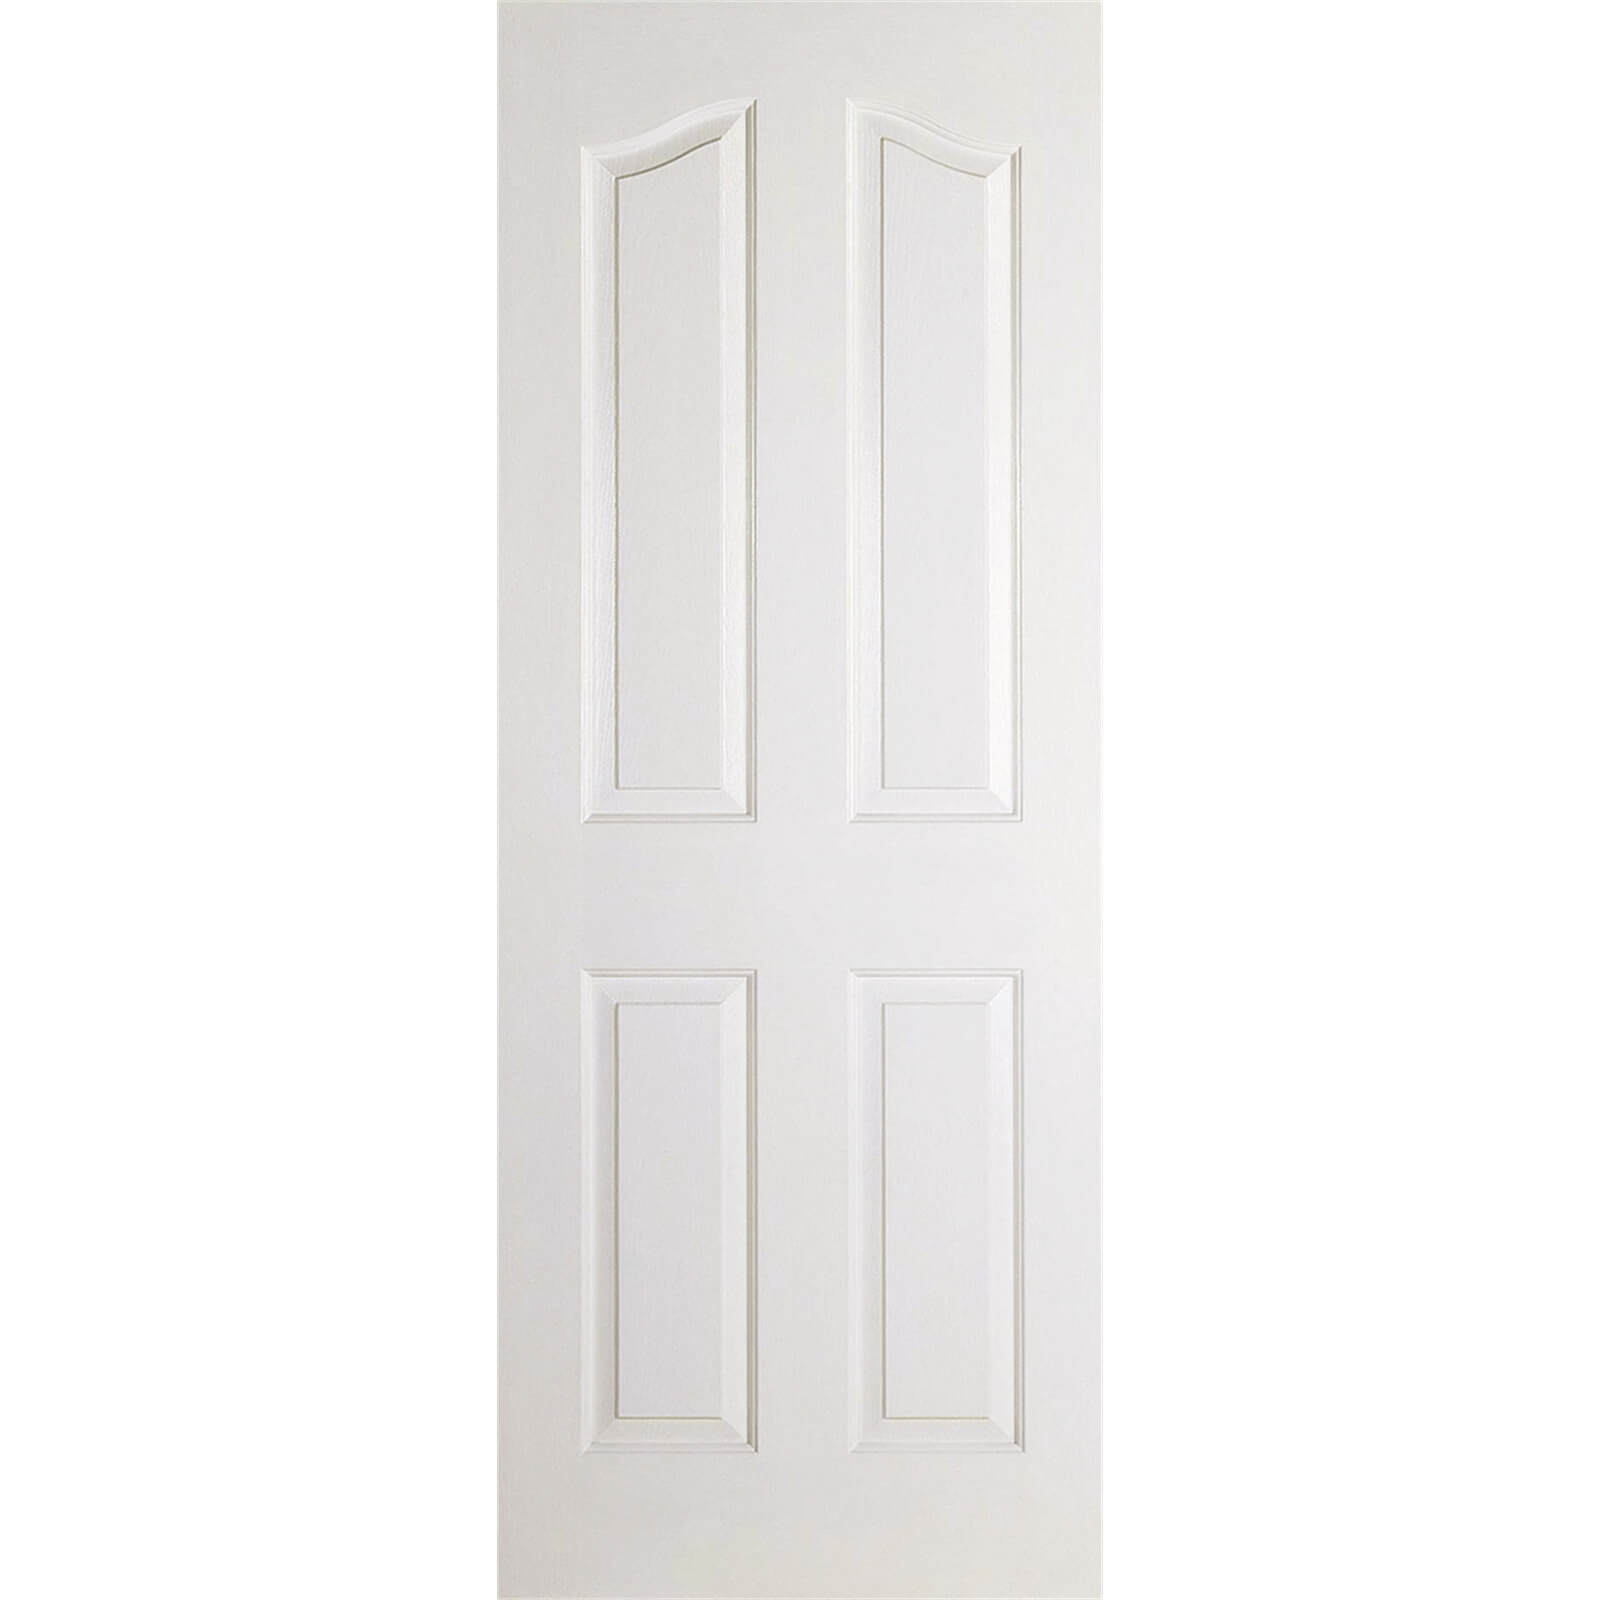 Mayfair Internal Primed White 4 Panel Door - 838 x 1981mm